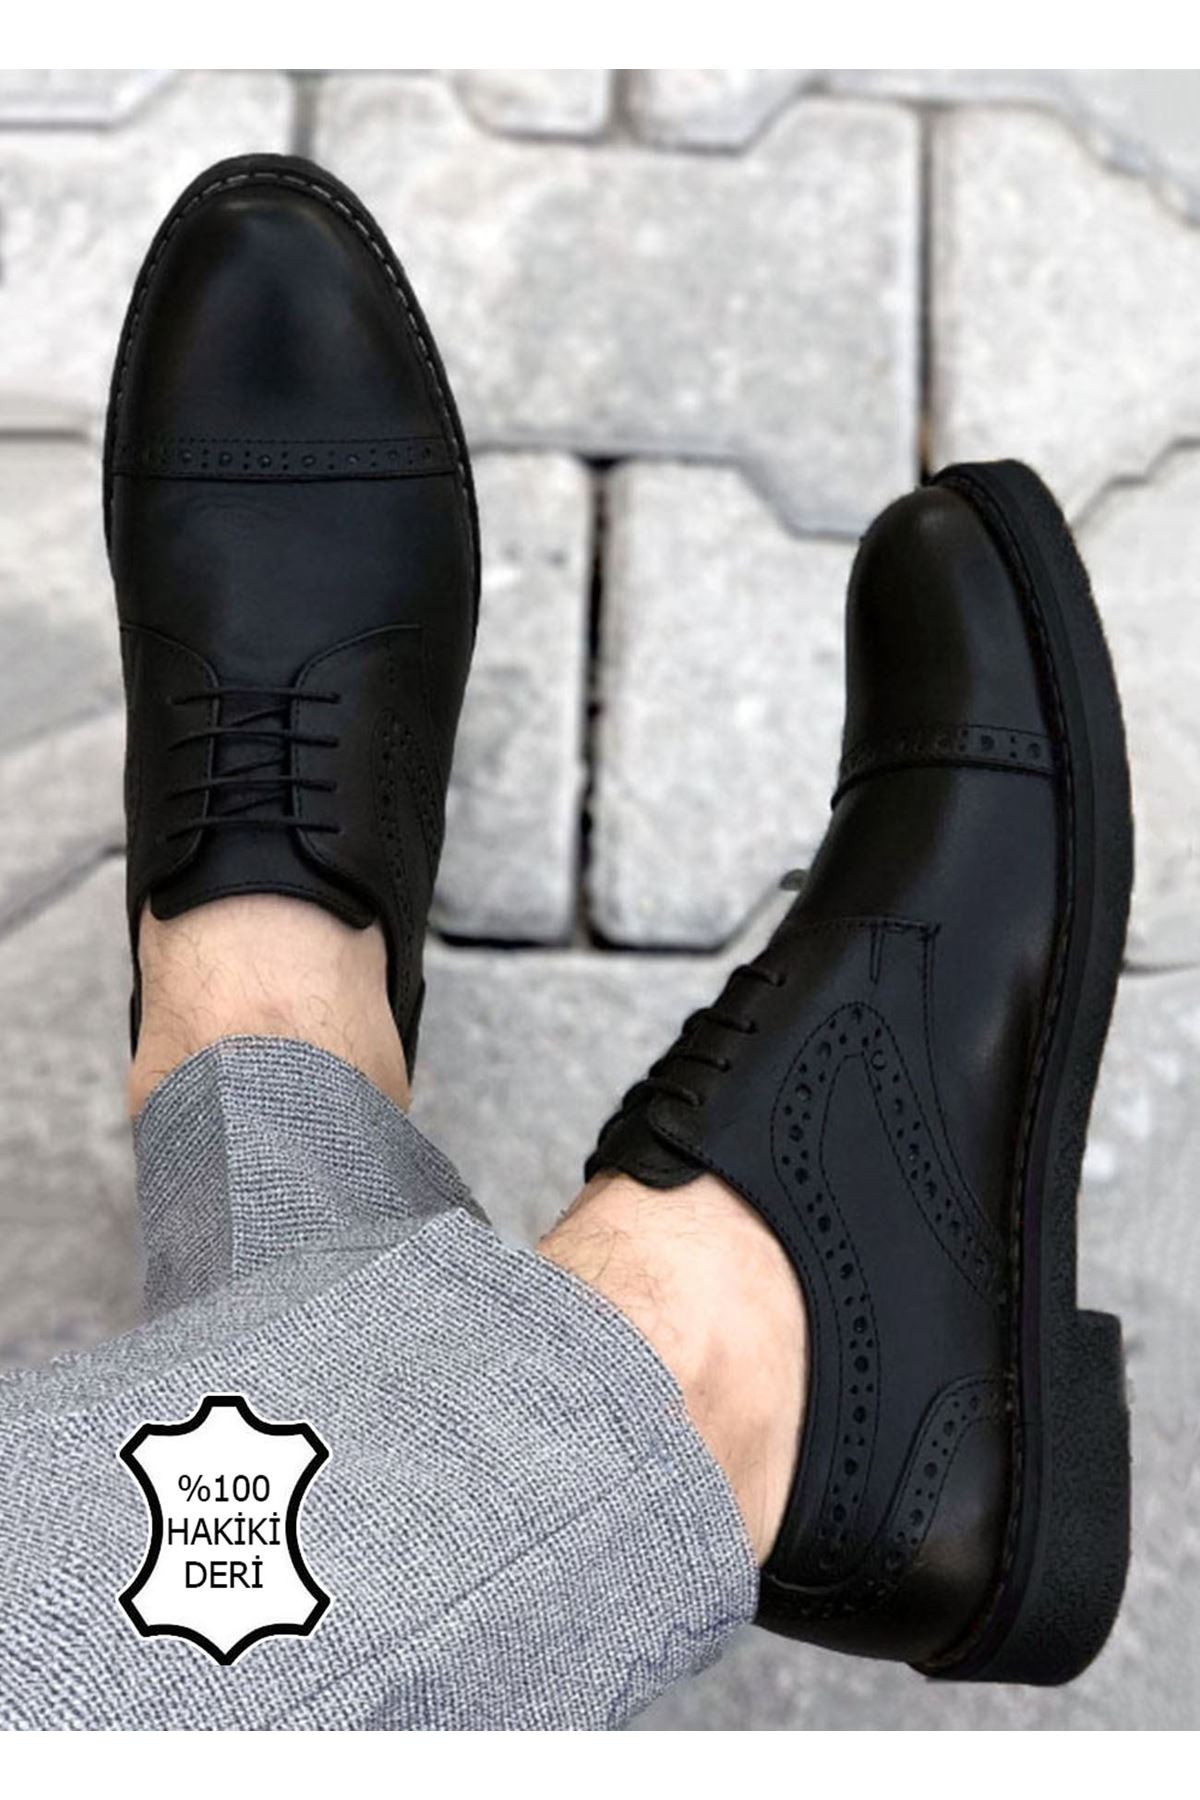 Boy Uzatan Gizli Topuk Siyah Hakiki Deri Desenli Erkek Klasik Ayakkabı